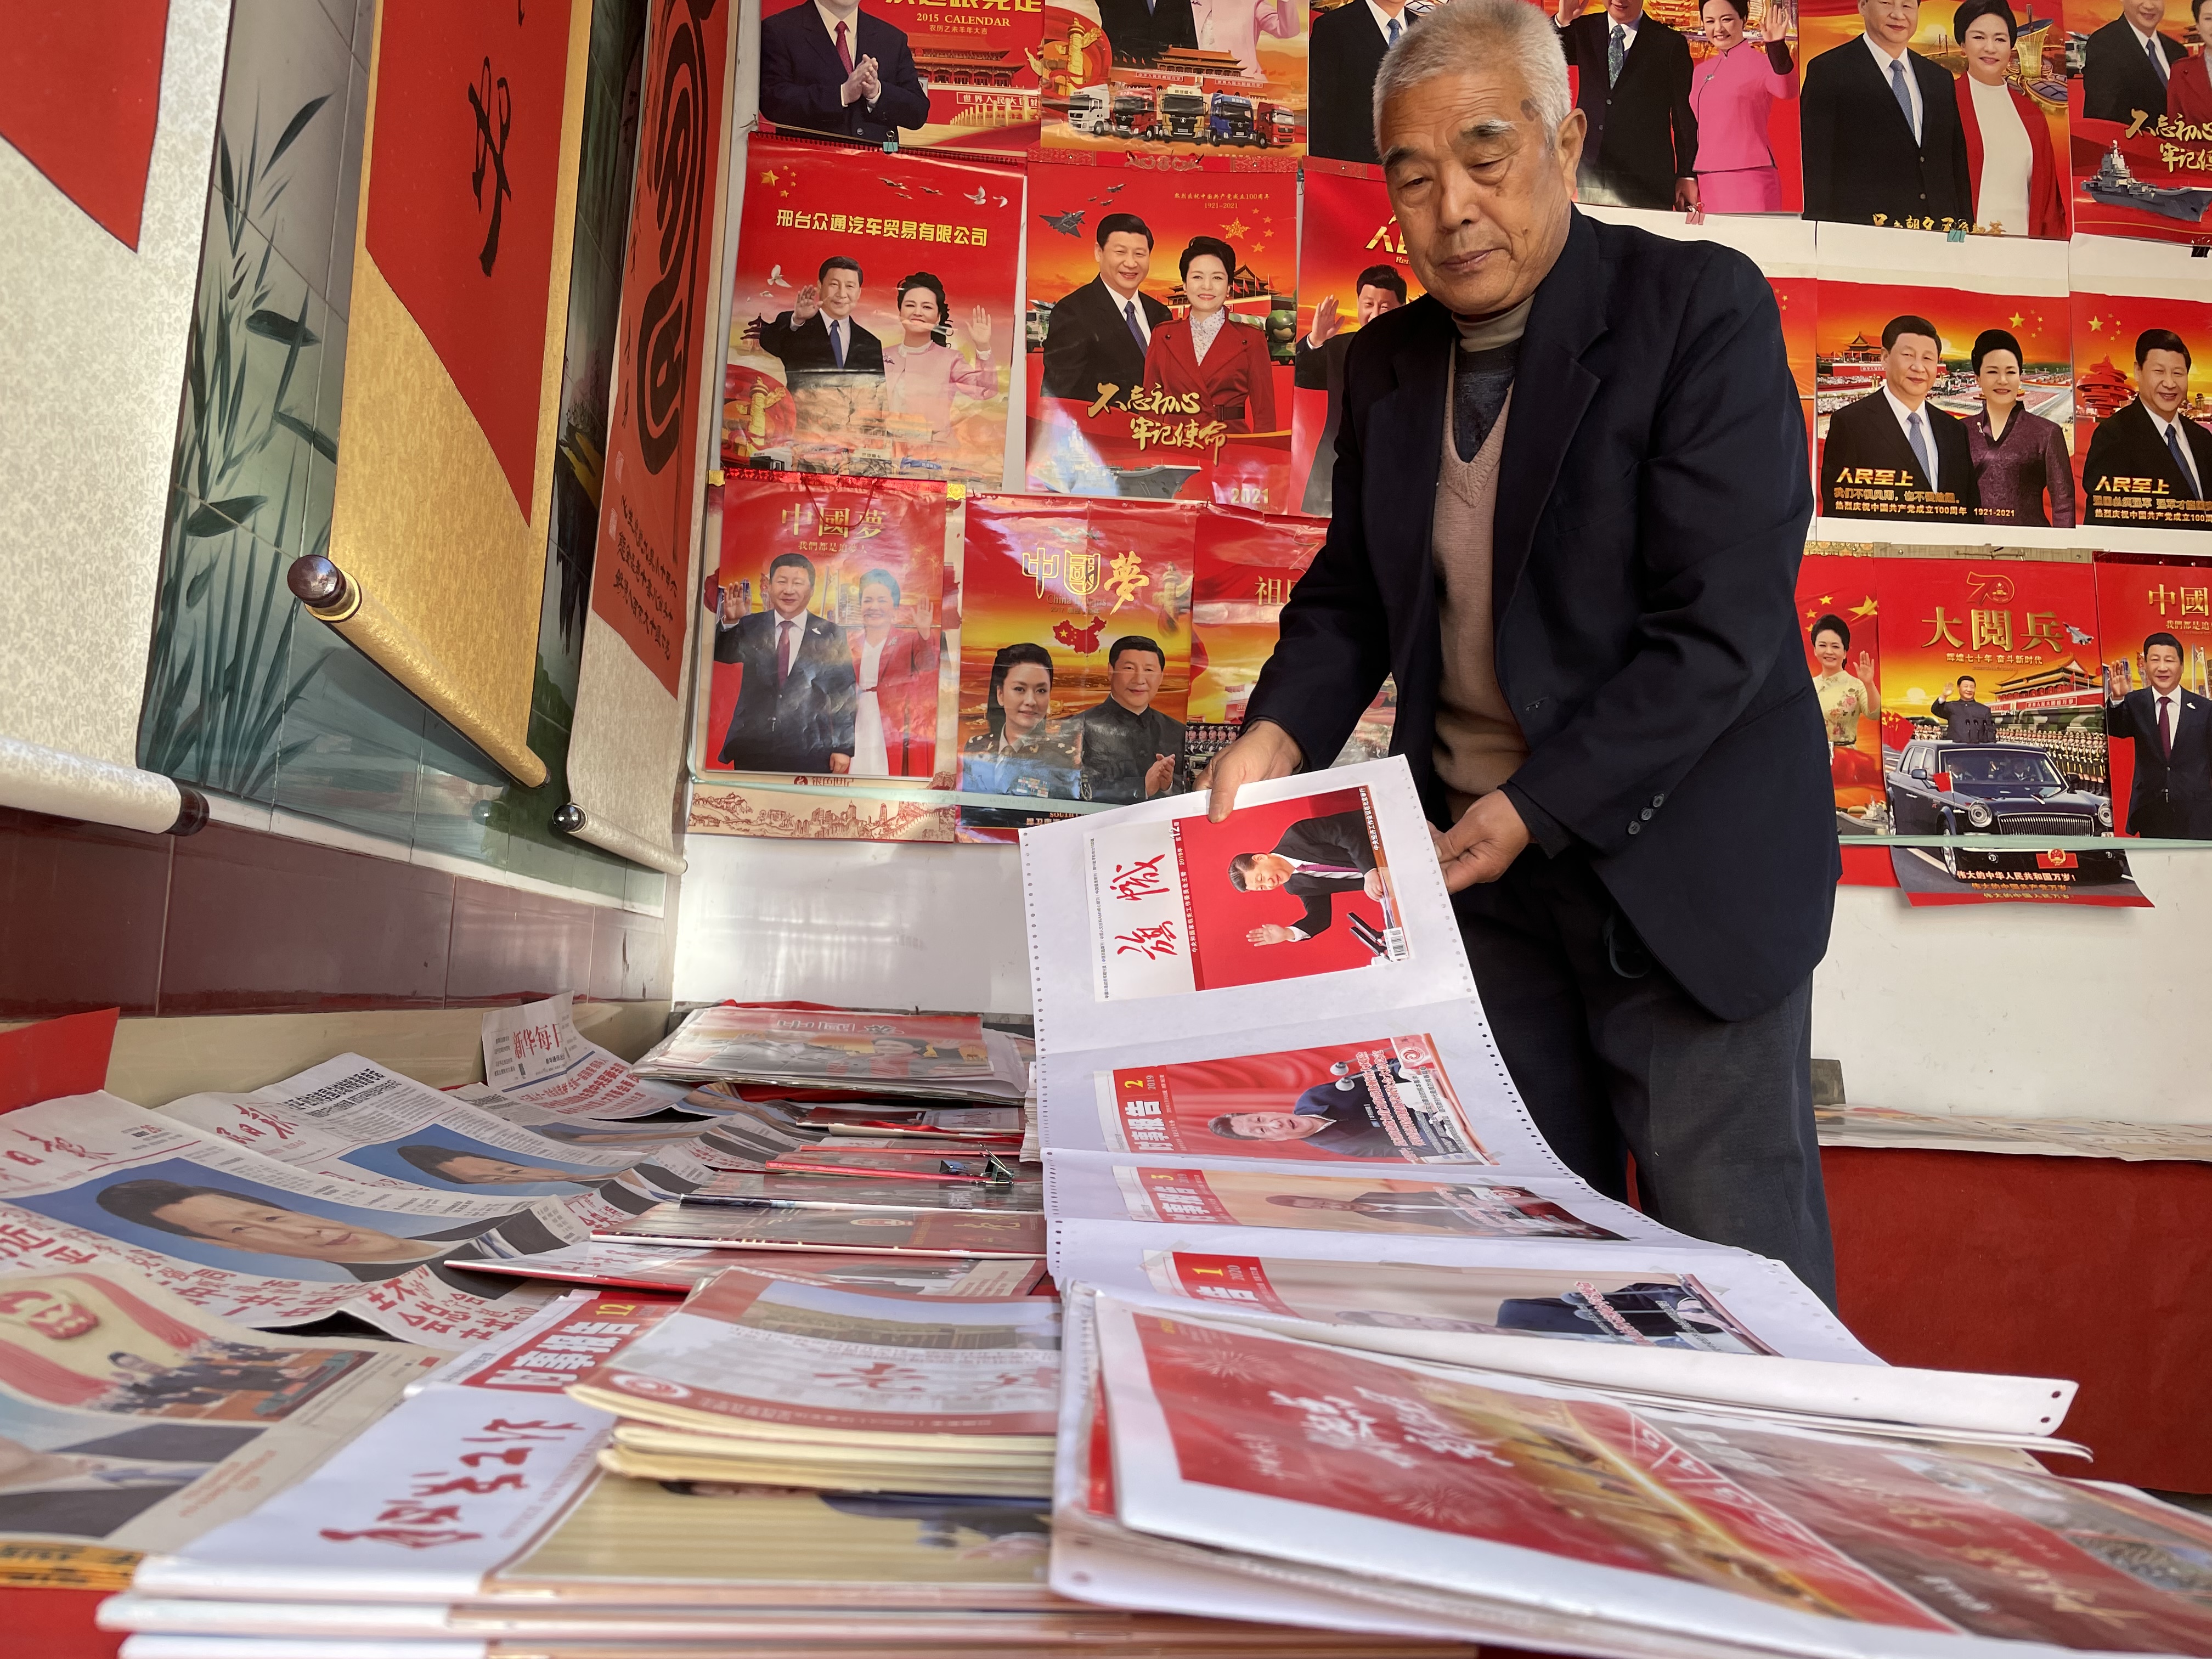 85岁老人举办红色藏书展迎建党100周年